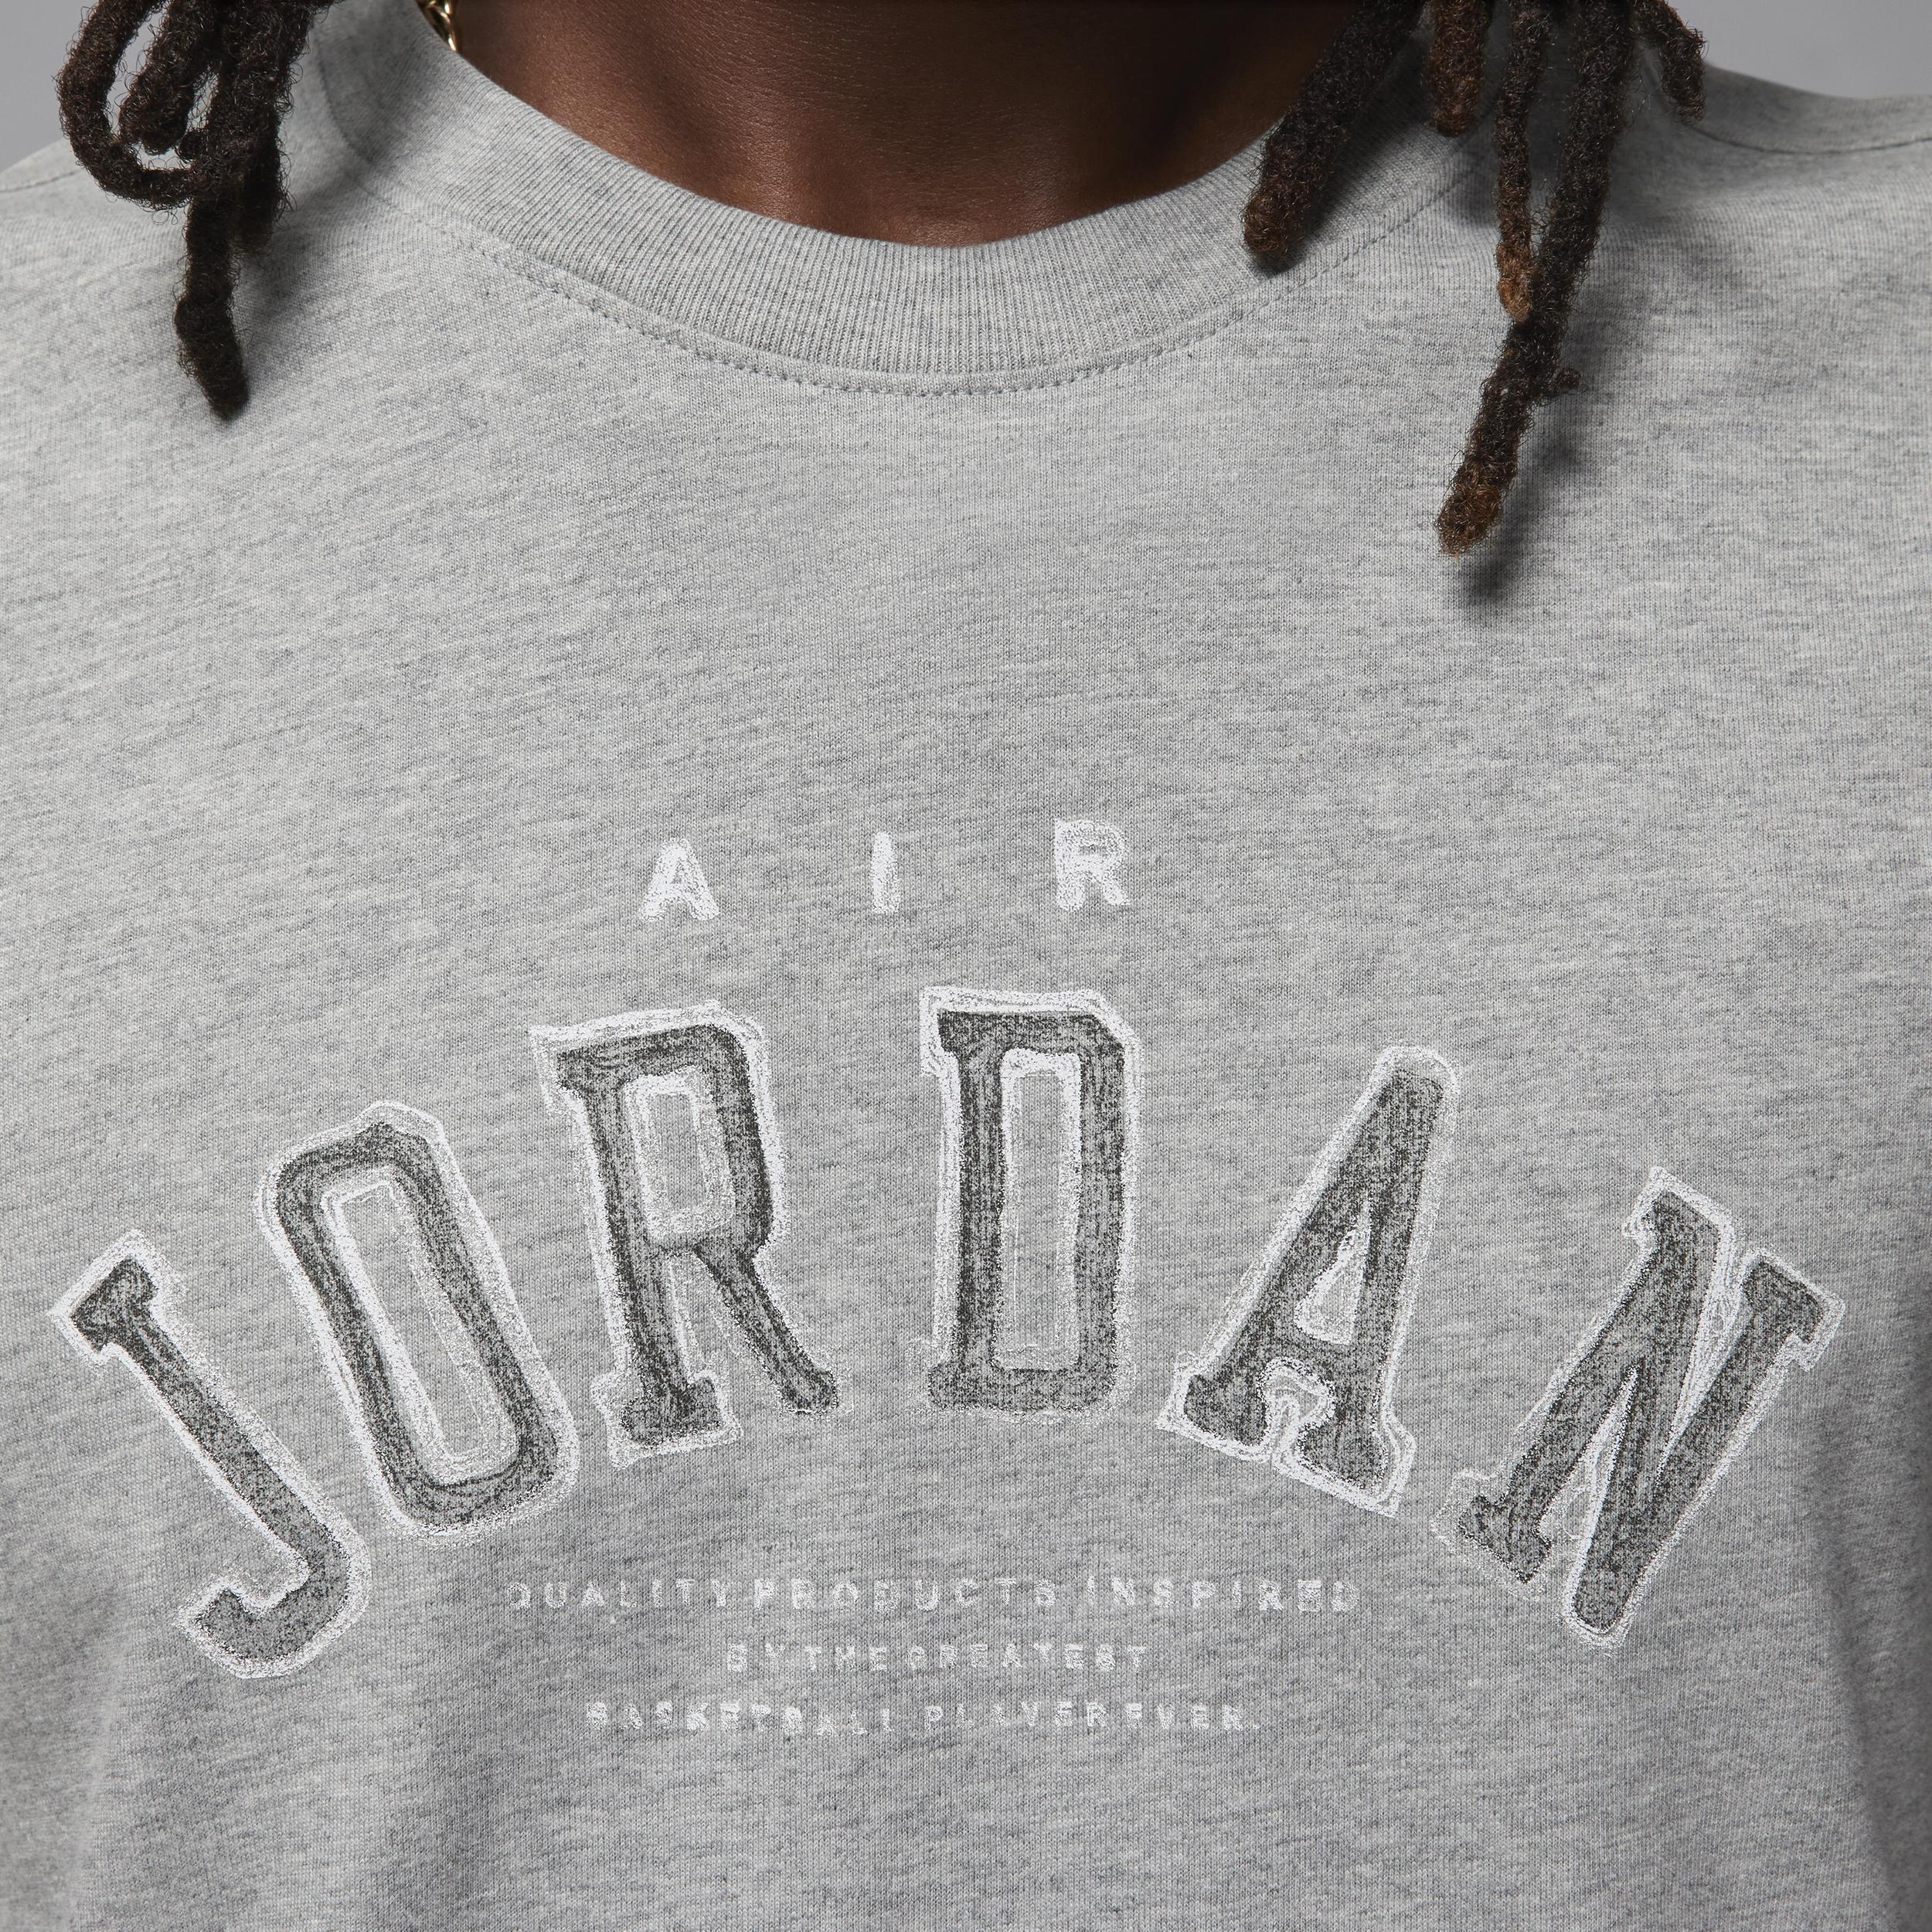 Men's Jordan Flight Essentials T-Shirt Product Image